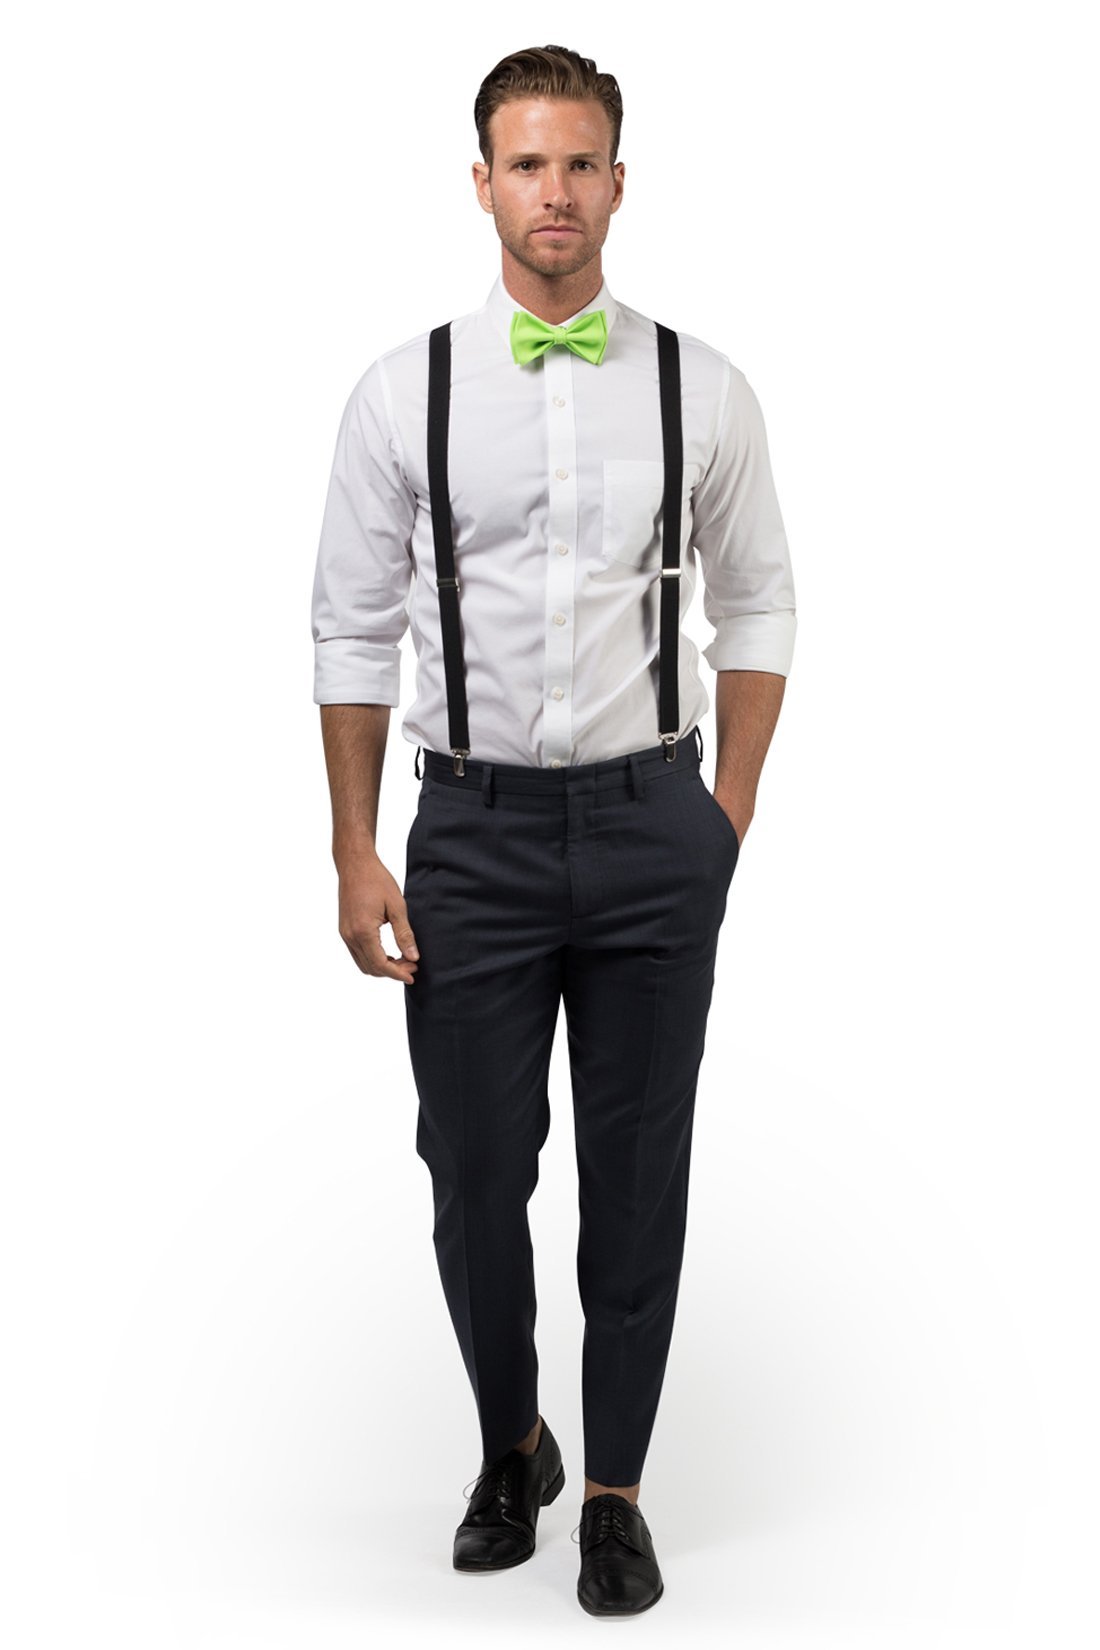 Black Suspenders & Lime Bow Tie